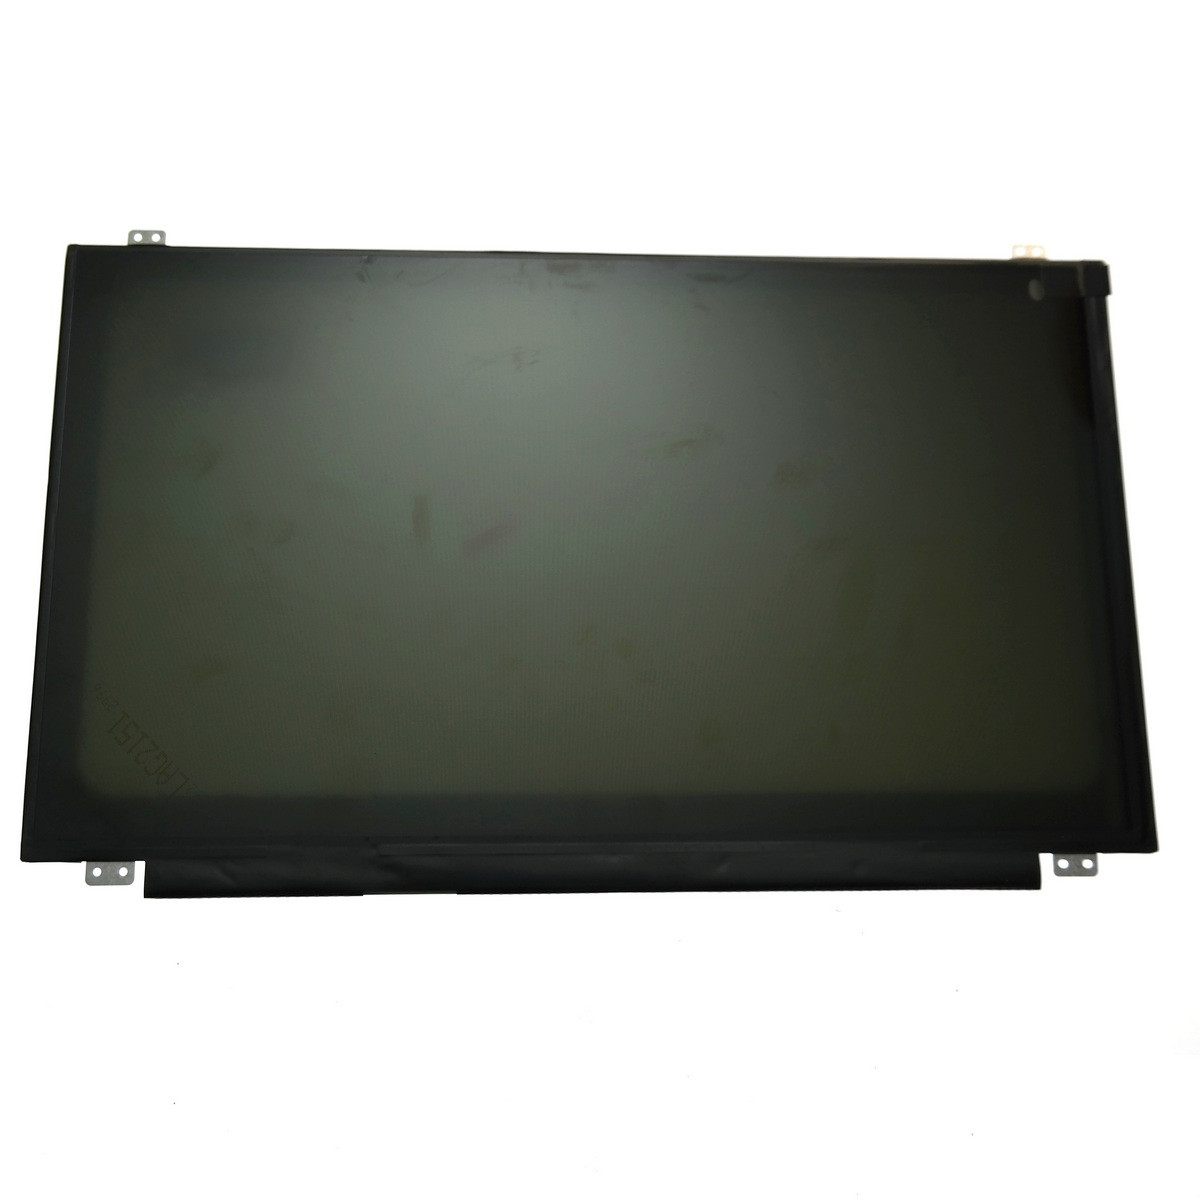 Экран для ноутбука Acer Aspire E1-522 E1-530 E1-530G E1-532 60hz 30 pin edp 1366x768 nt156whm-n42 мат